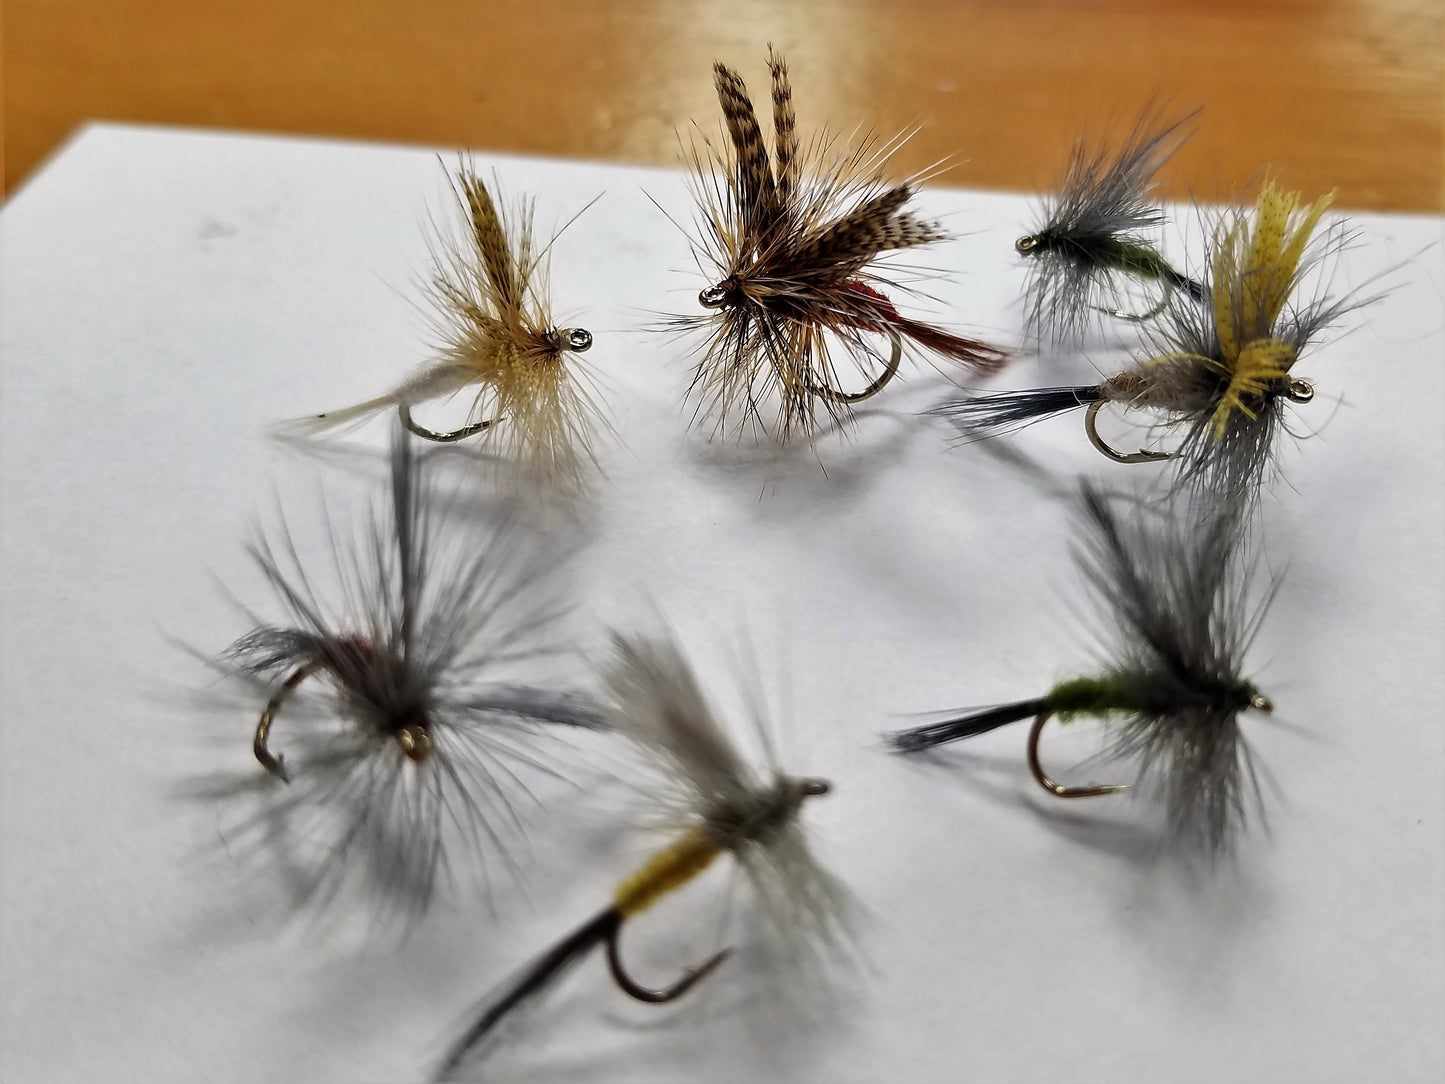 Catskill Dry Fly, Traditional Dry Fly, Catskill Style Dry Fly, Catskill Flies